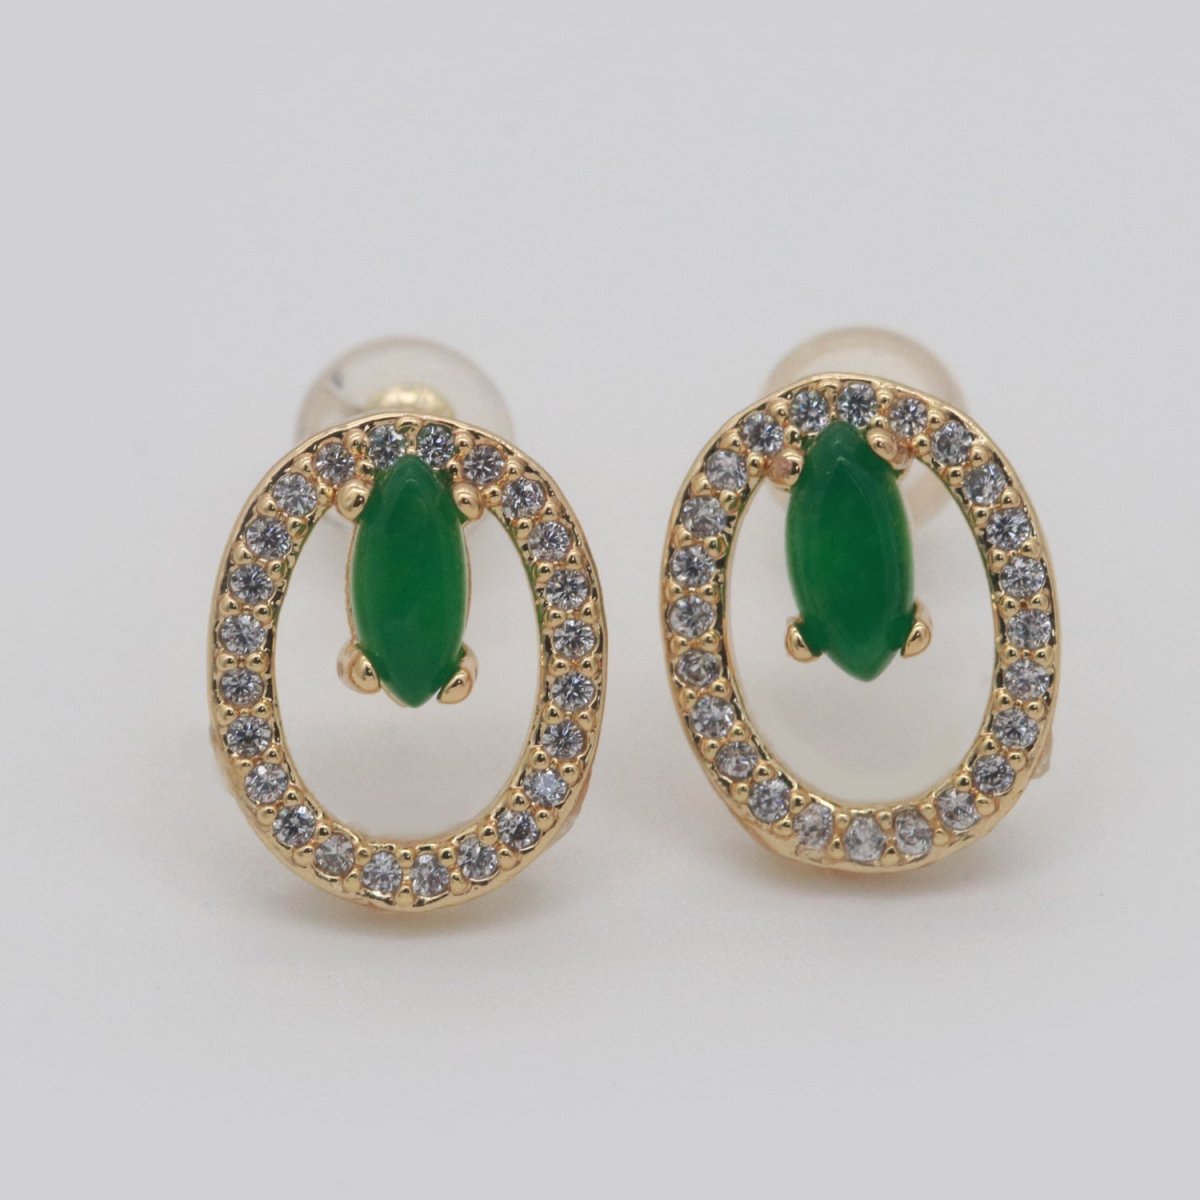 Gold Filled Studs / Dainty Green Earrings / Green Gem Earrings / Emerald Earrings / Green Stone Earrings / CZ Stud Earring /Dainty Studs T-161 - DLUXCA